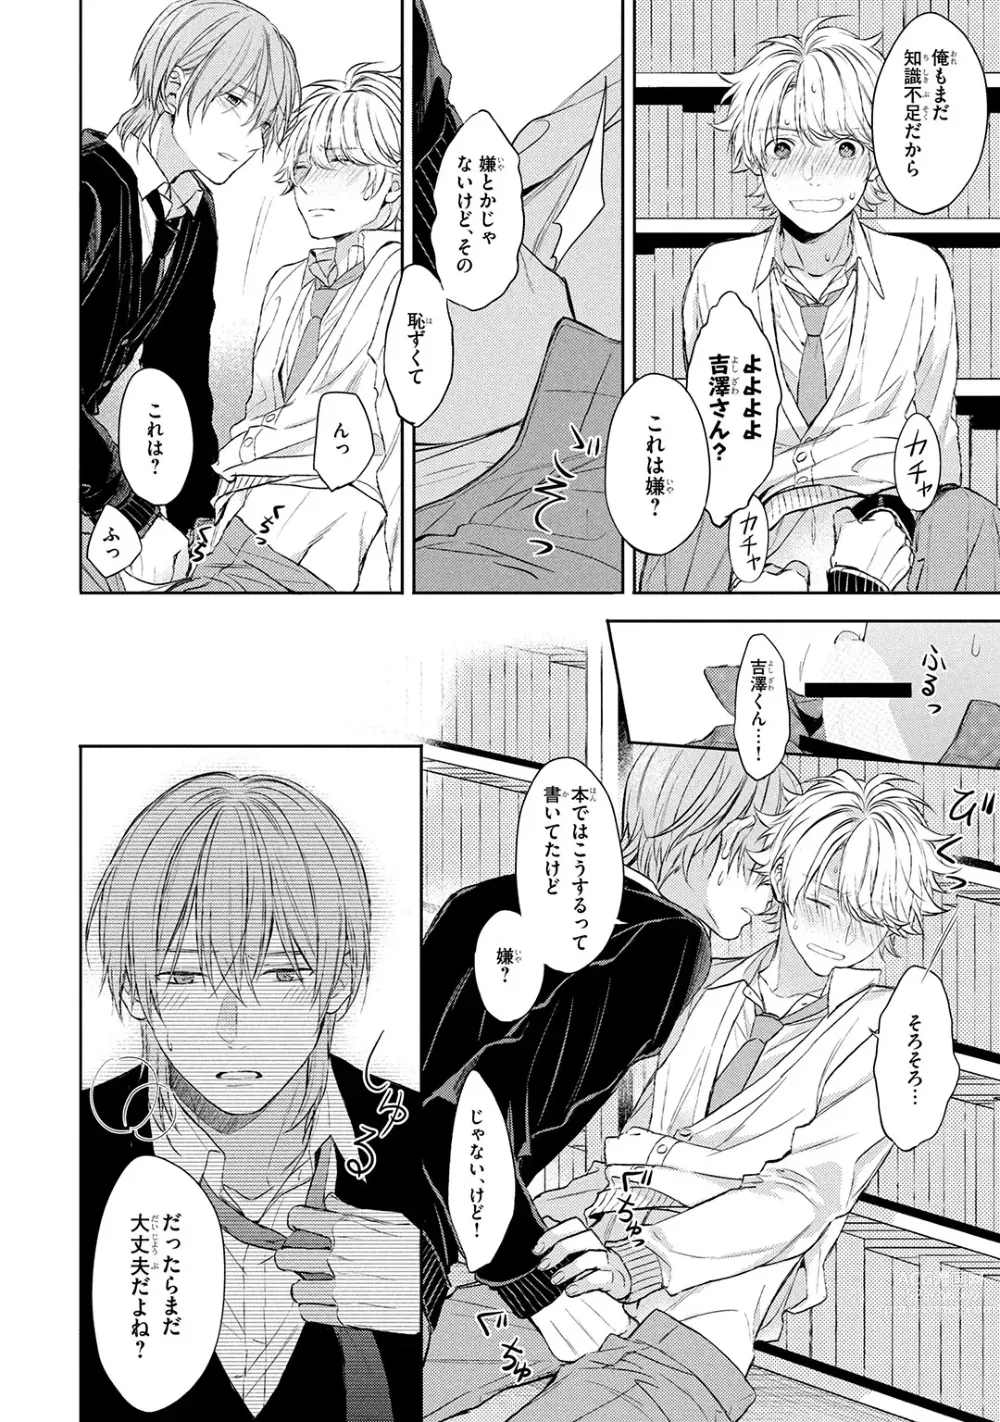 Page 158 of manga Ore dake ga Shitte iru